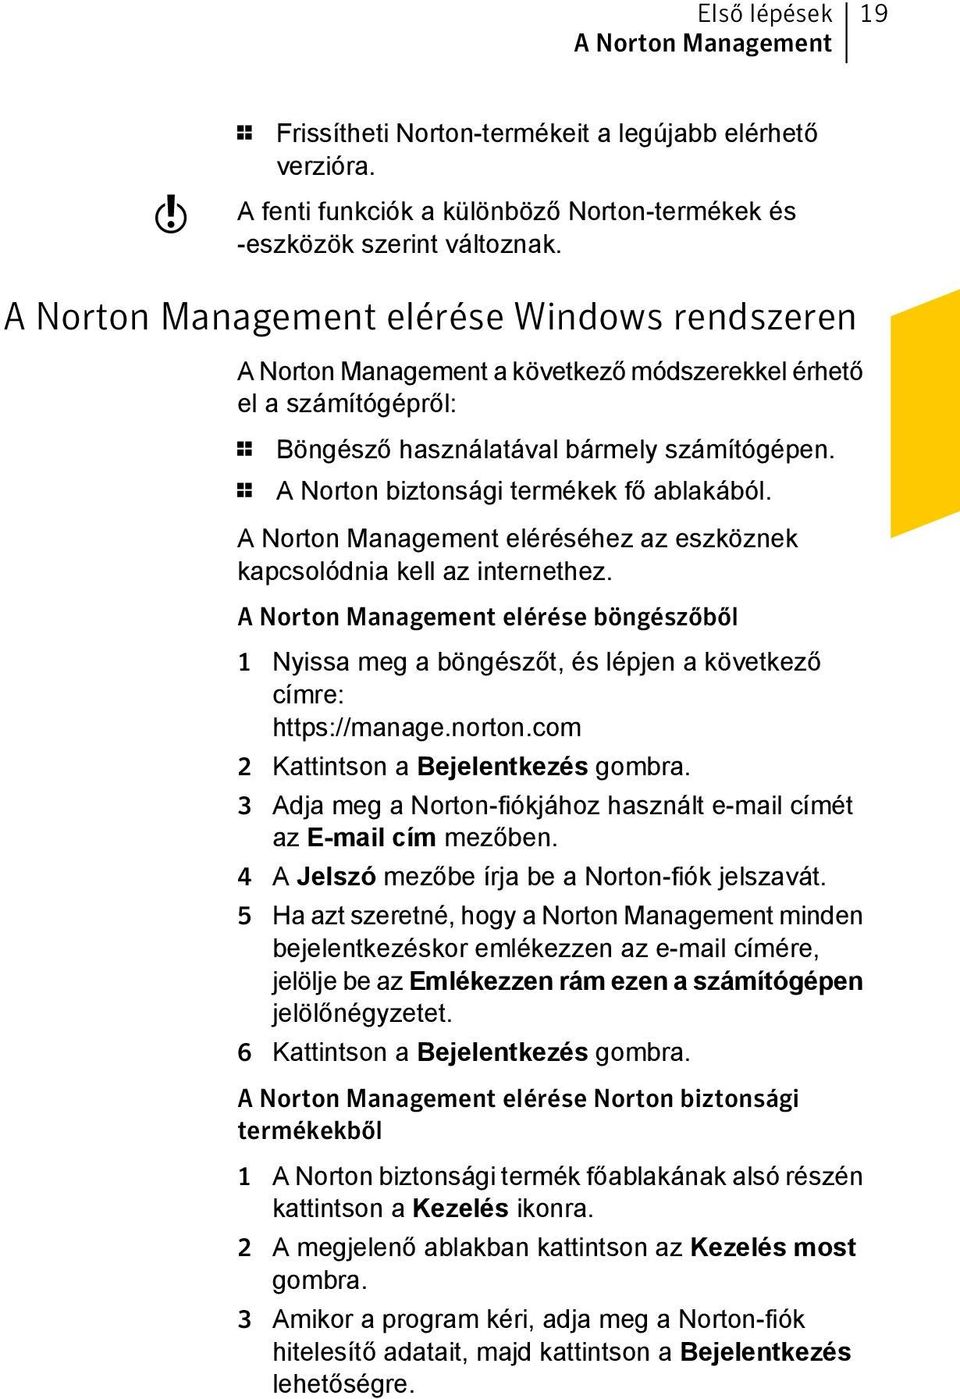 1 A Norton biztonsági termékek fő ablakából. A Norton Management eléréséhez az eszköznek kapcsolódnia kell az internethez.